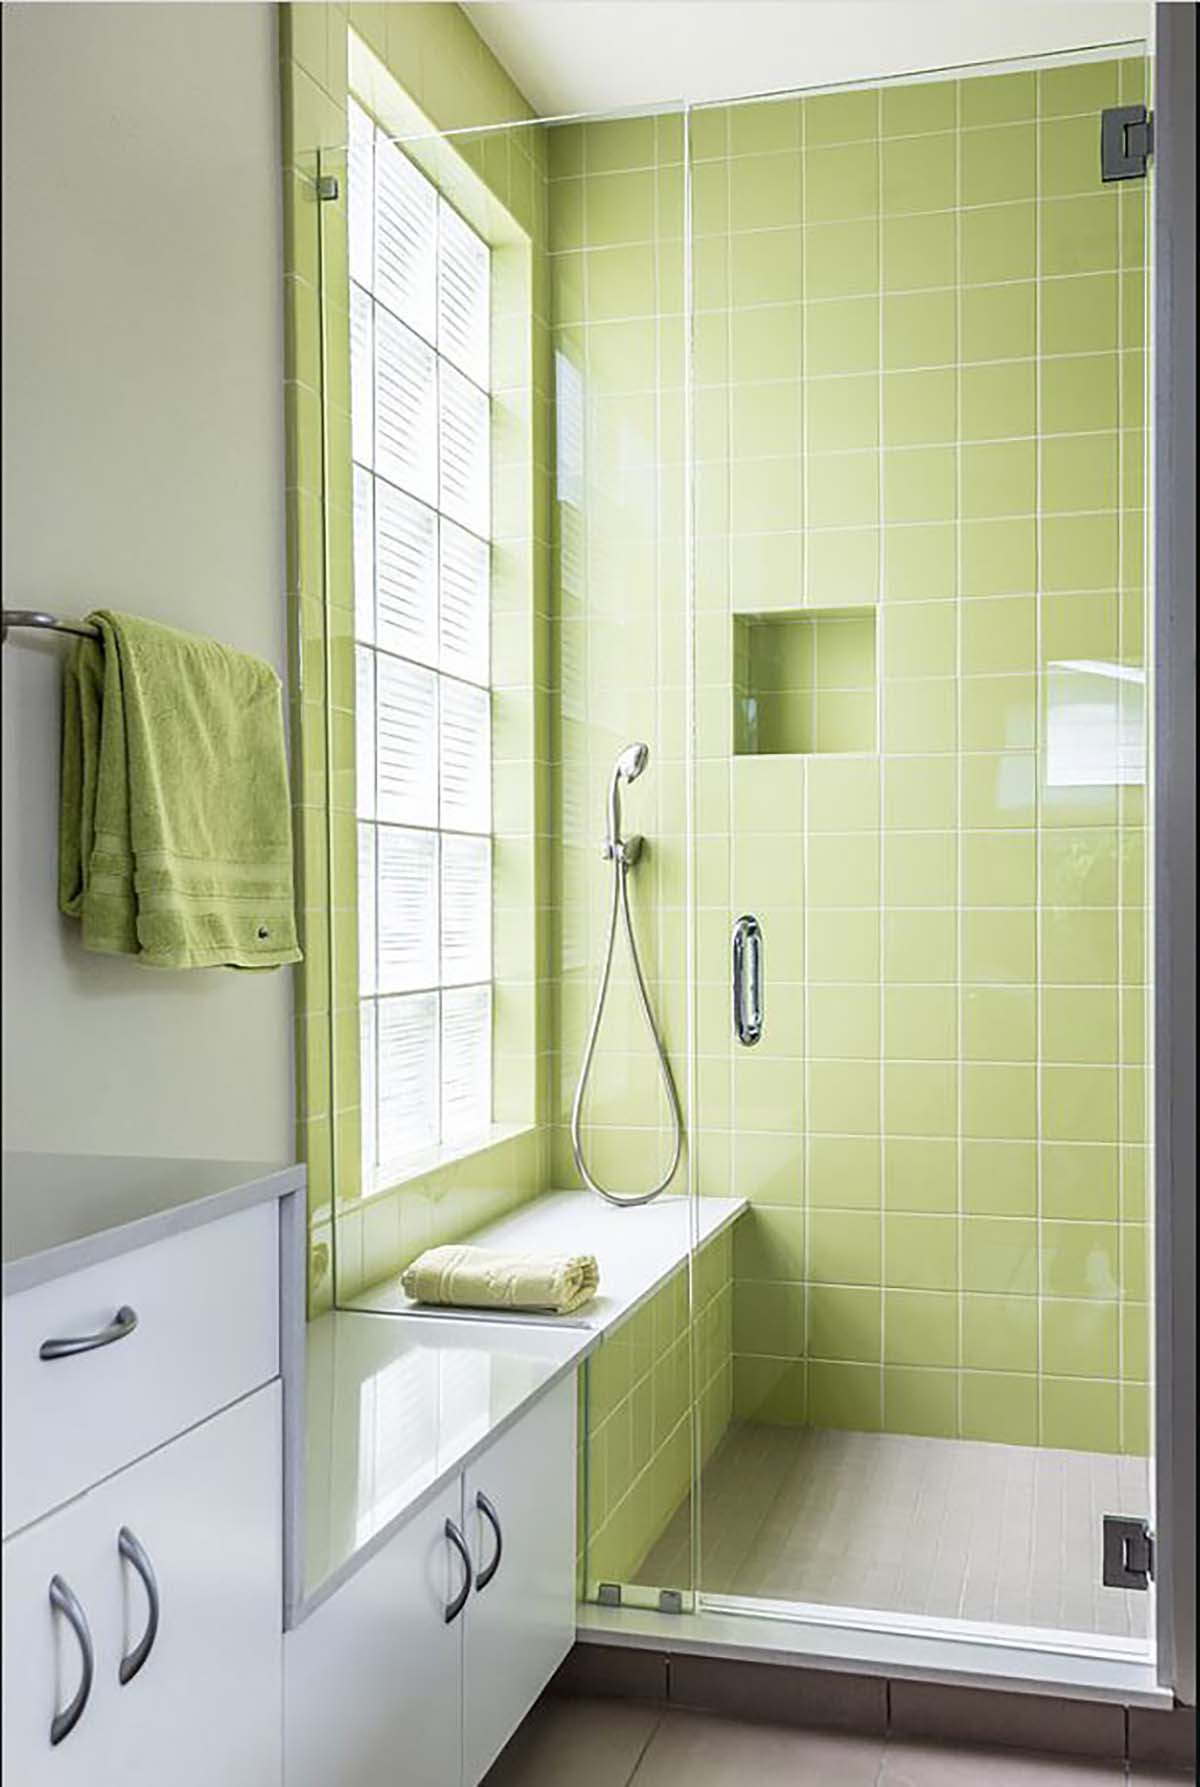 Thiết kế phòng vệ sinh tối giản với màu xanh quả bơ.

Nguồn: Pinterest